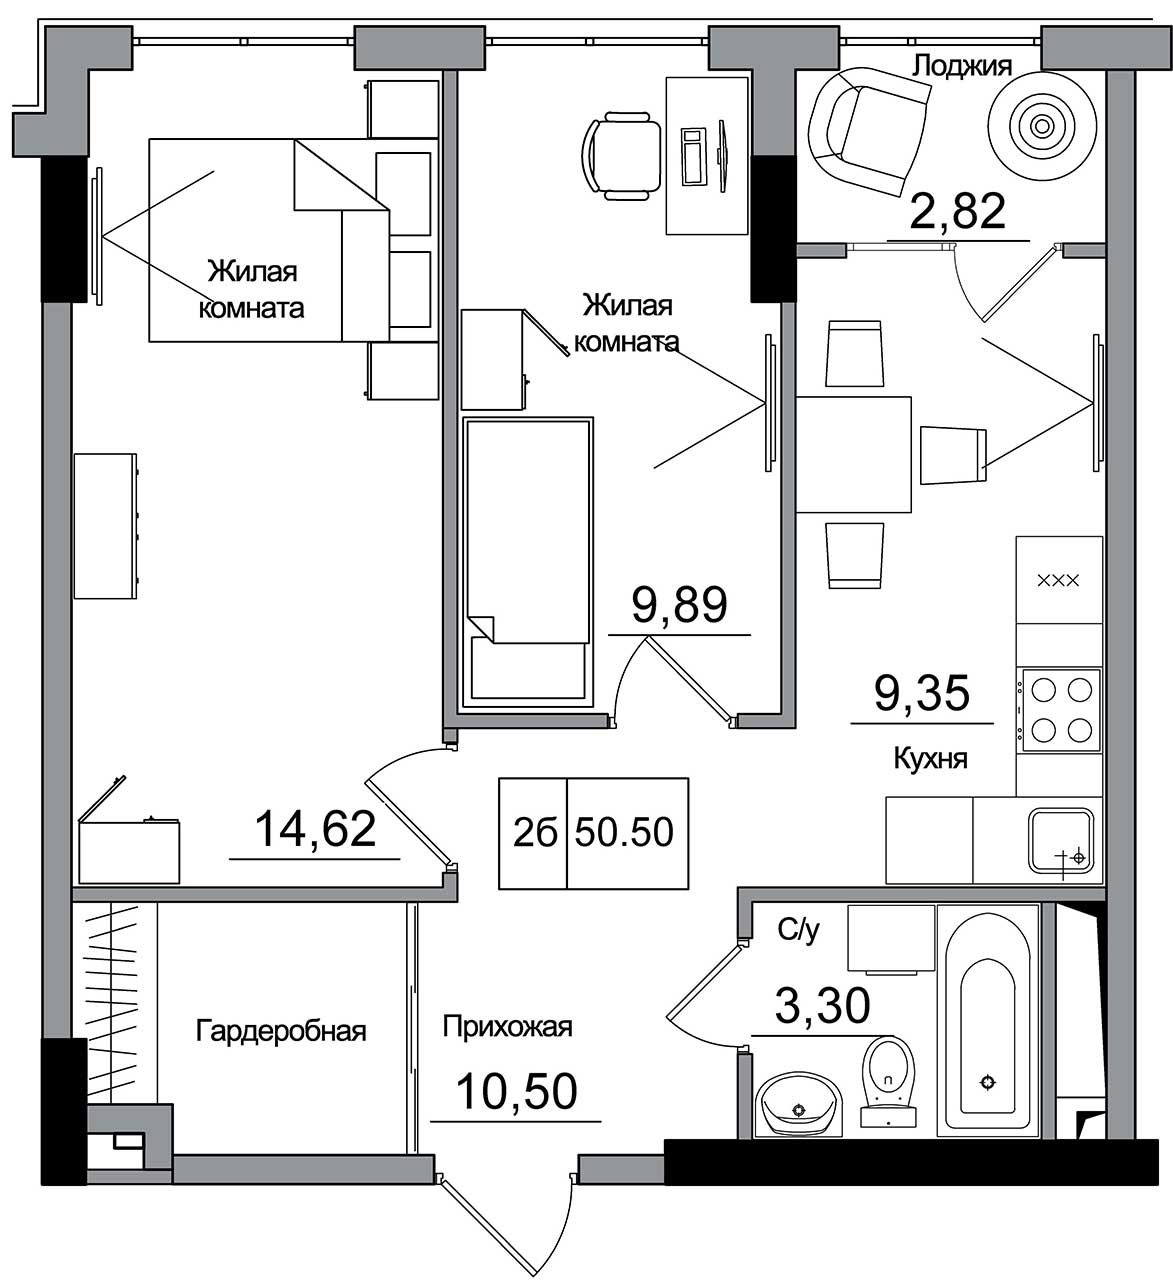 Планировка 2-к квартира площей 50.5м2, AB-16-11/00007.